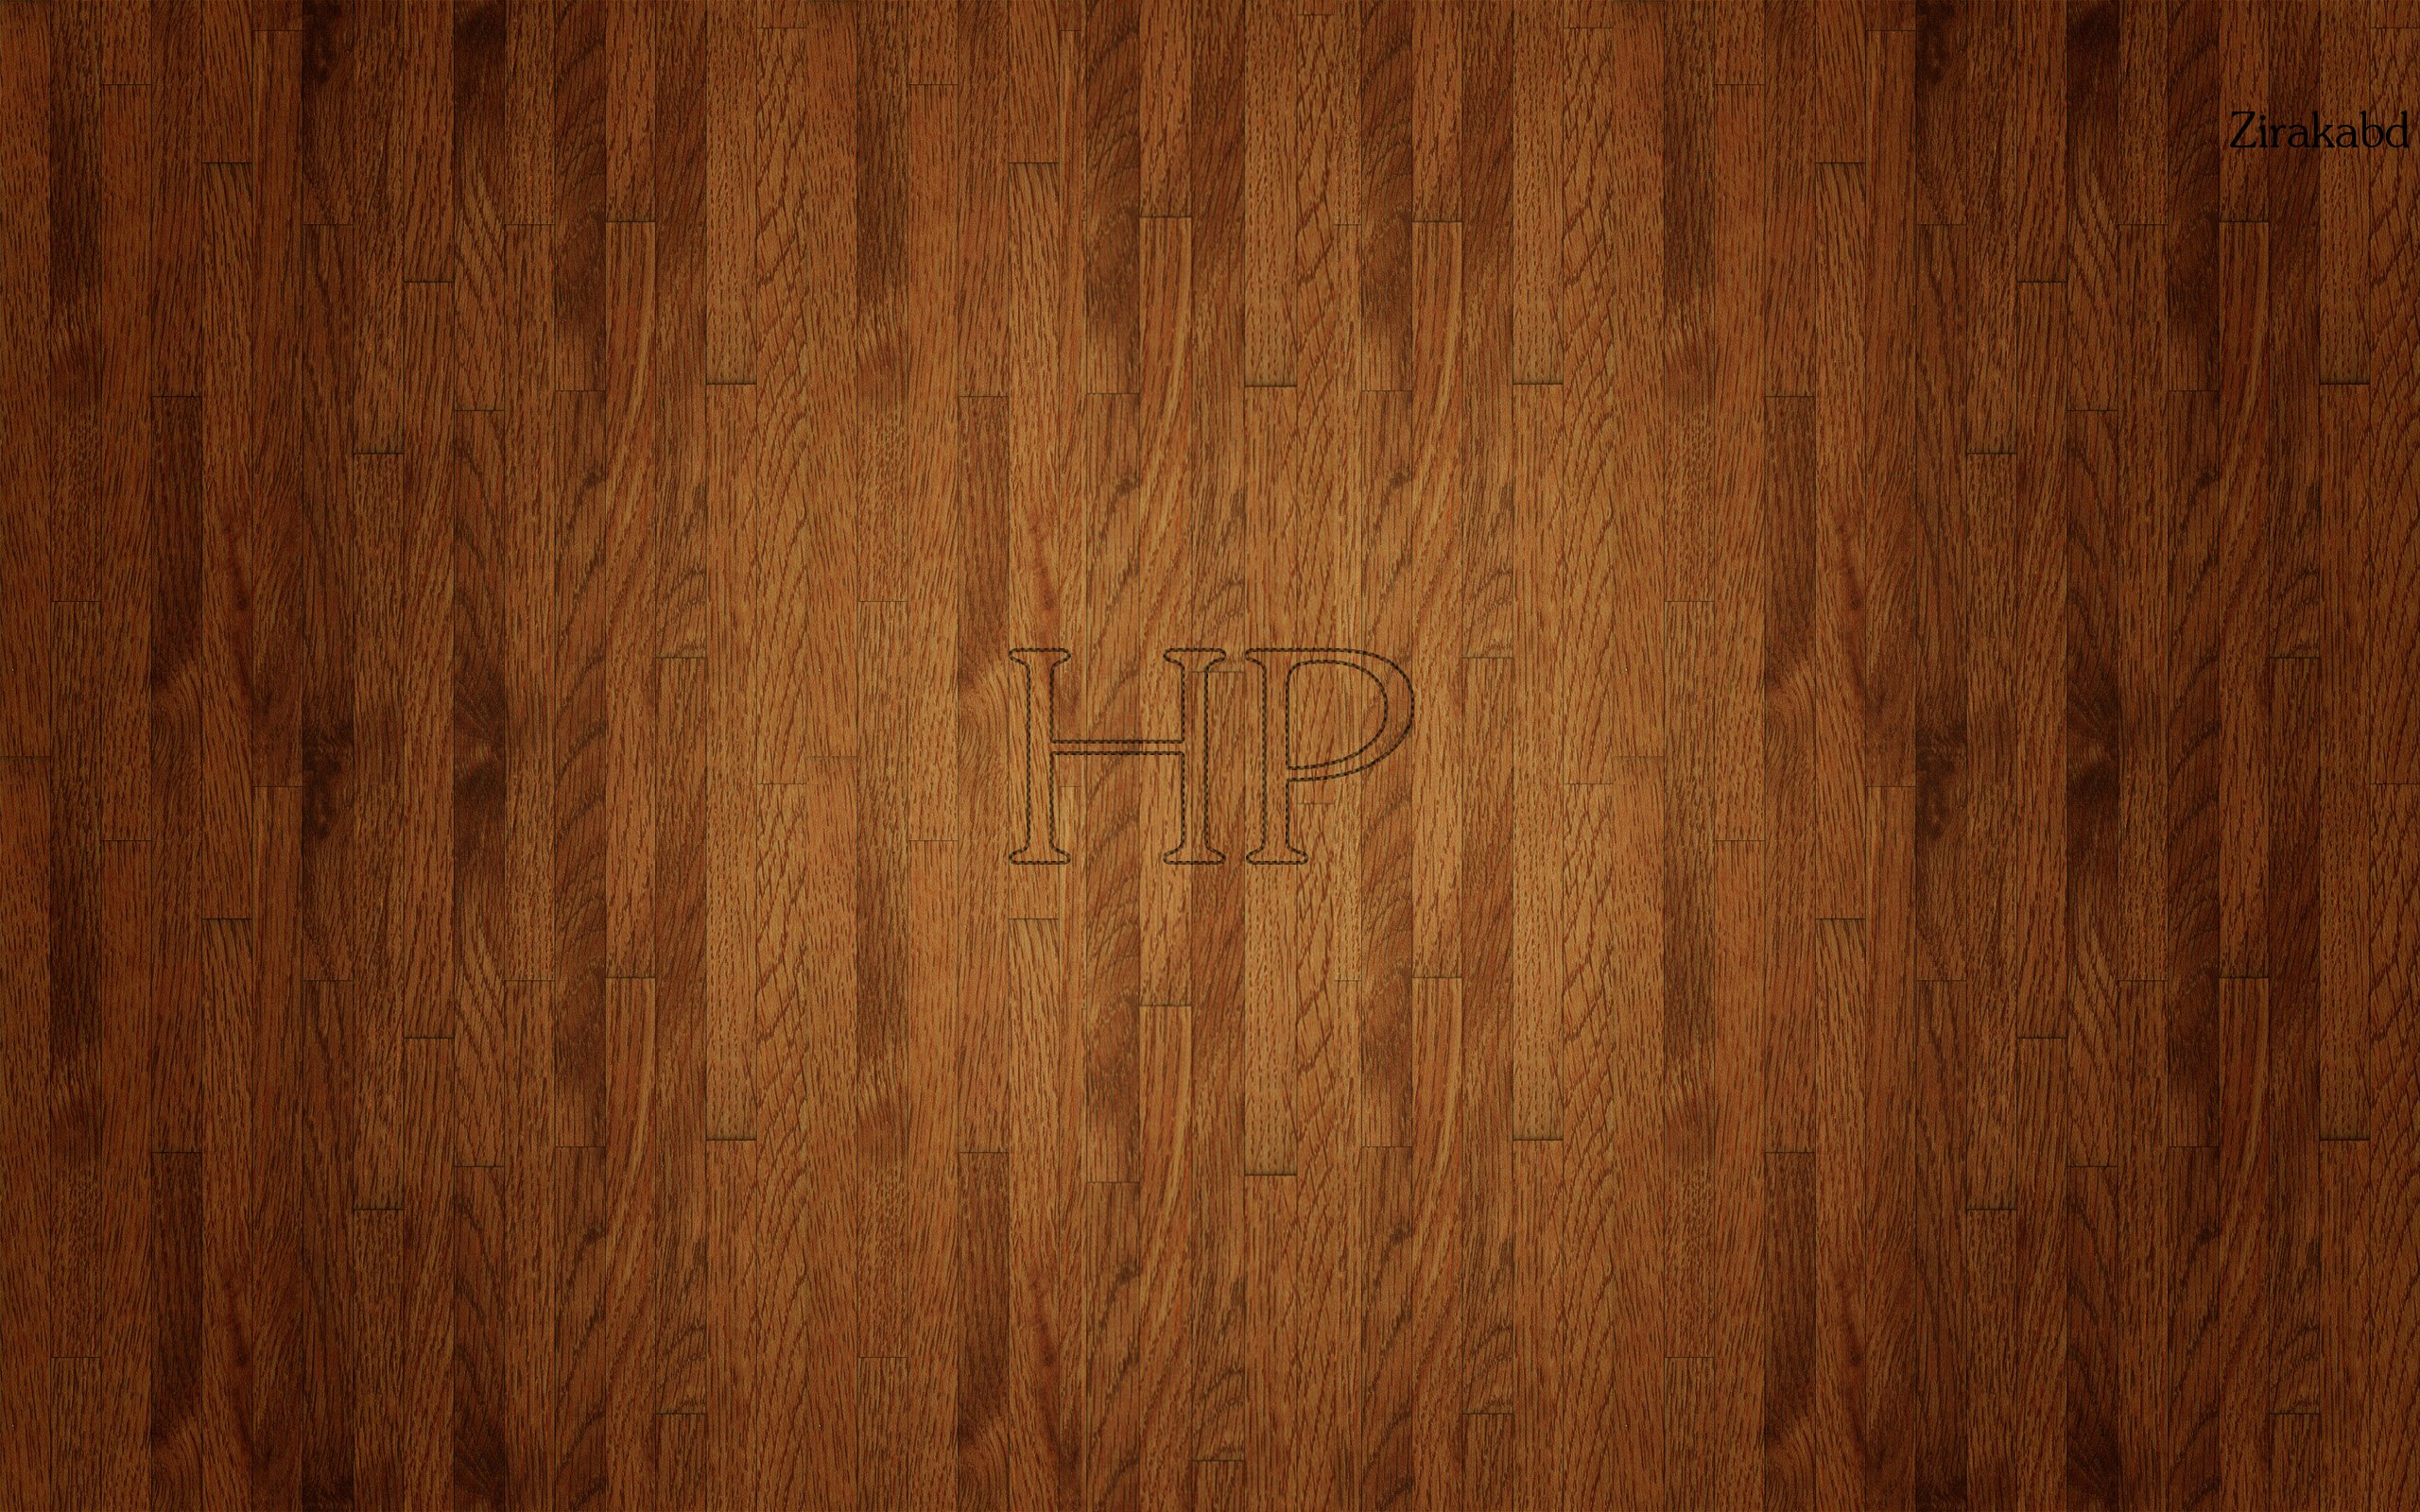 Hewlett Packard Puter Logo Wallpaper Background